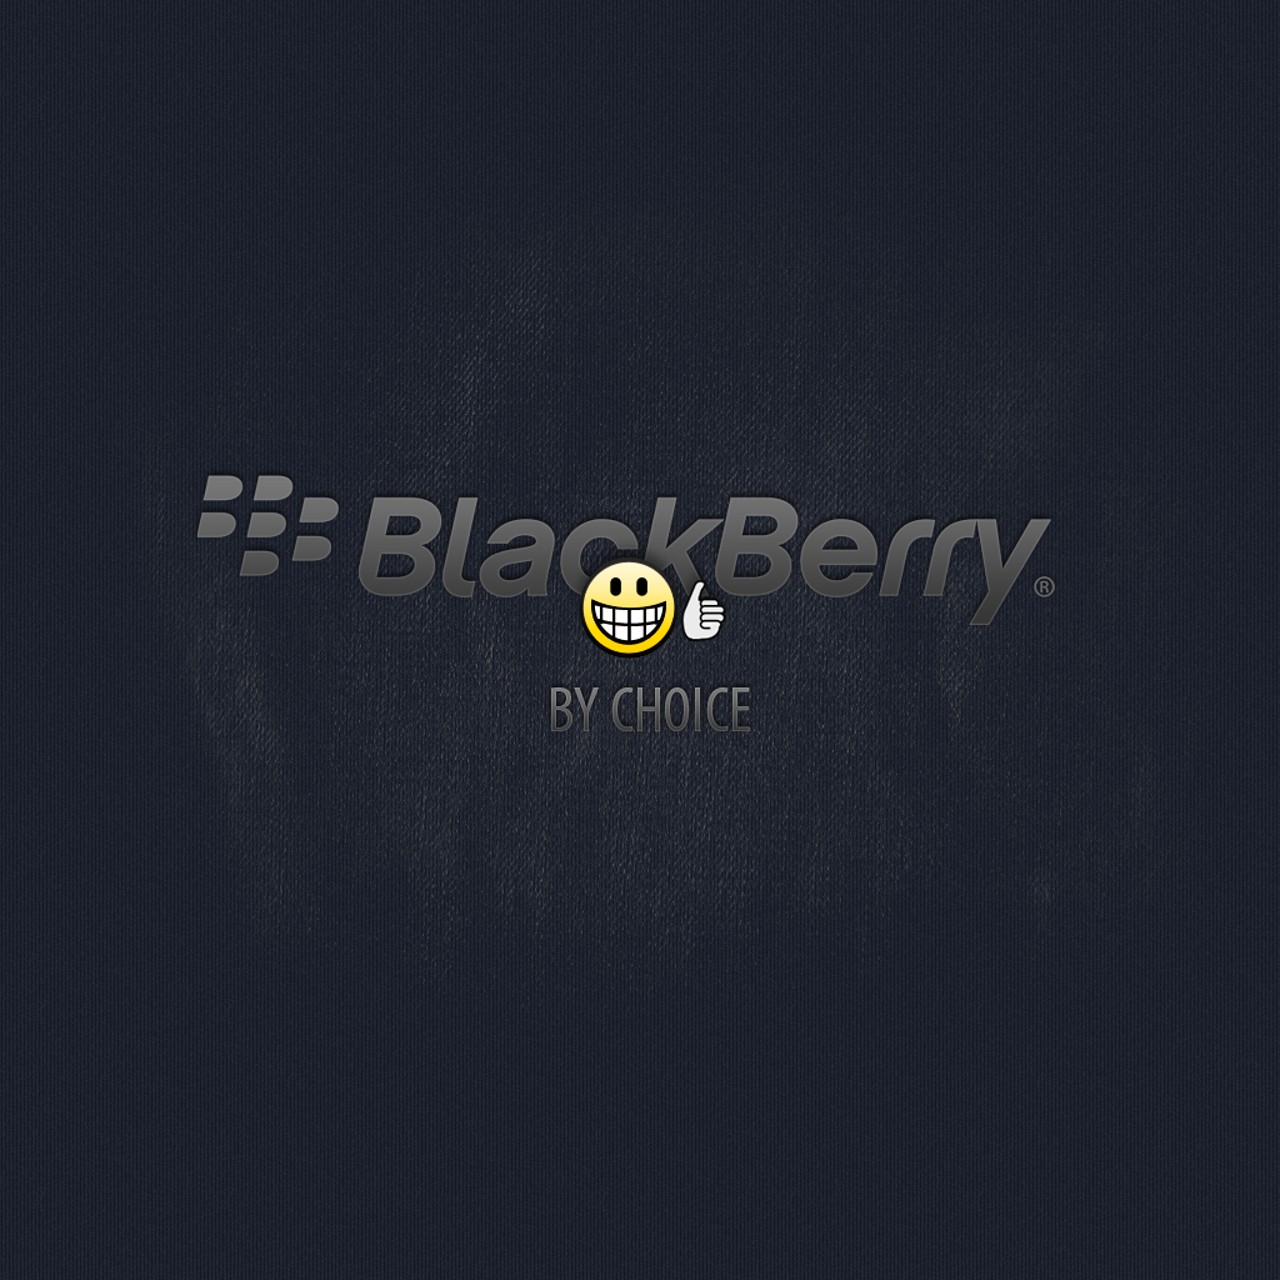 Blackberry Playbook Carita Feliz Happy Smiley Emoticon D Wallpaper